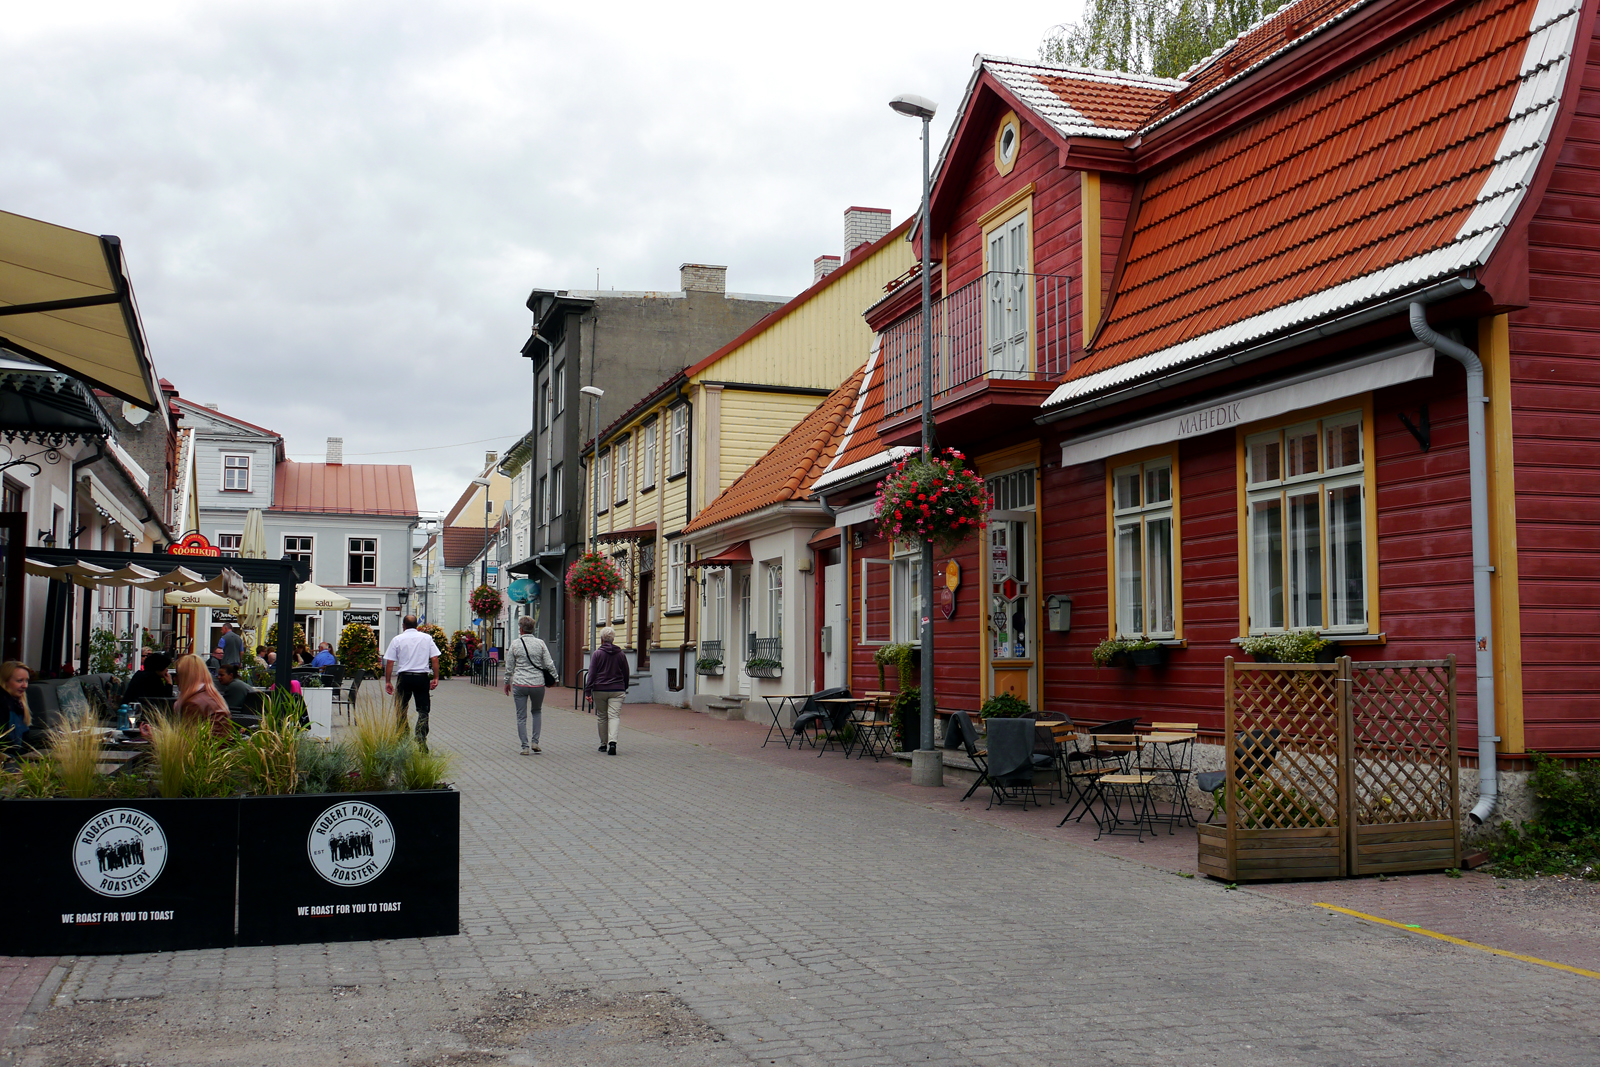 Pärnu-Estland-Estonia